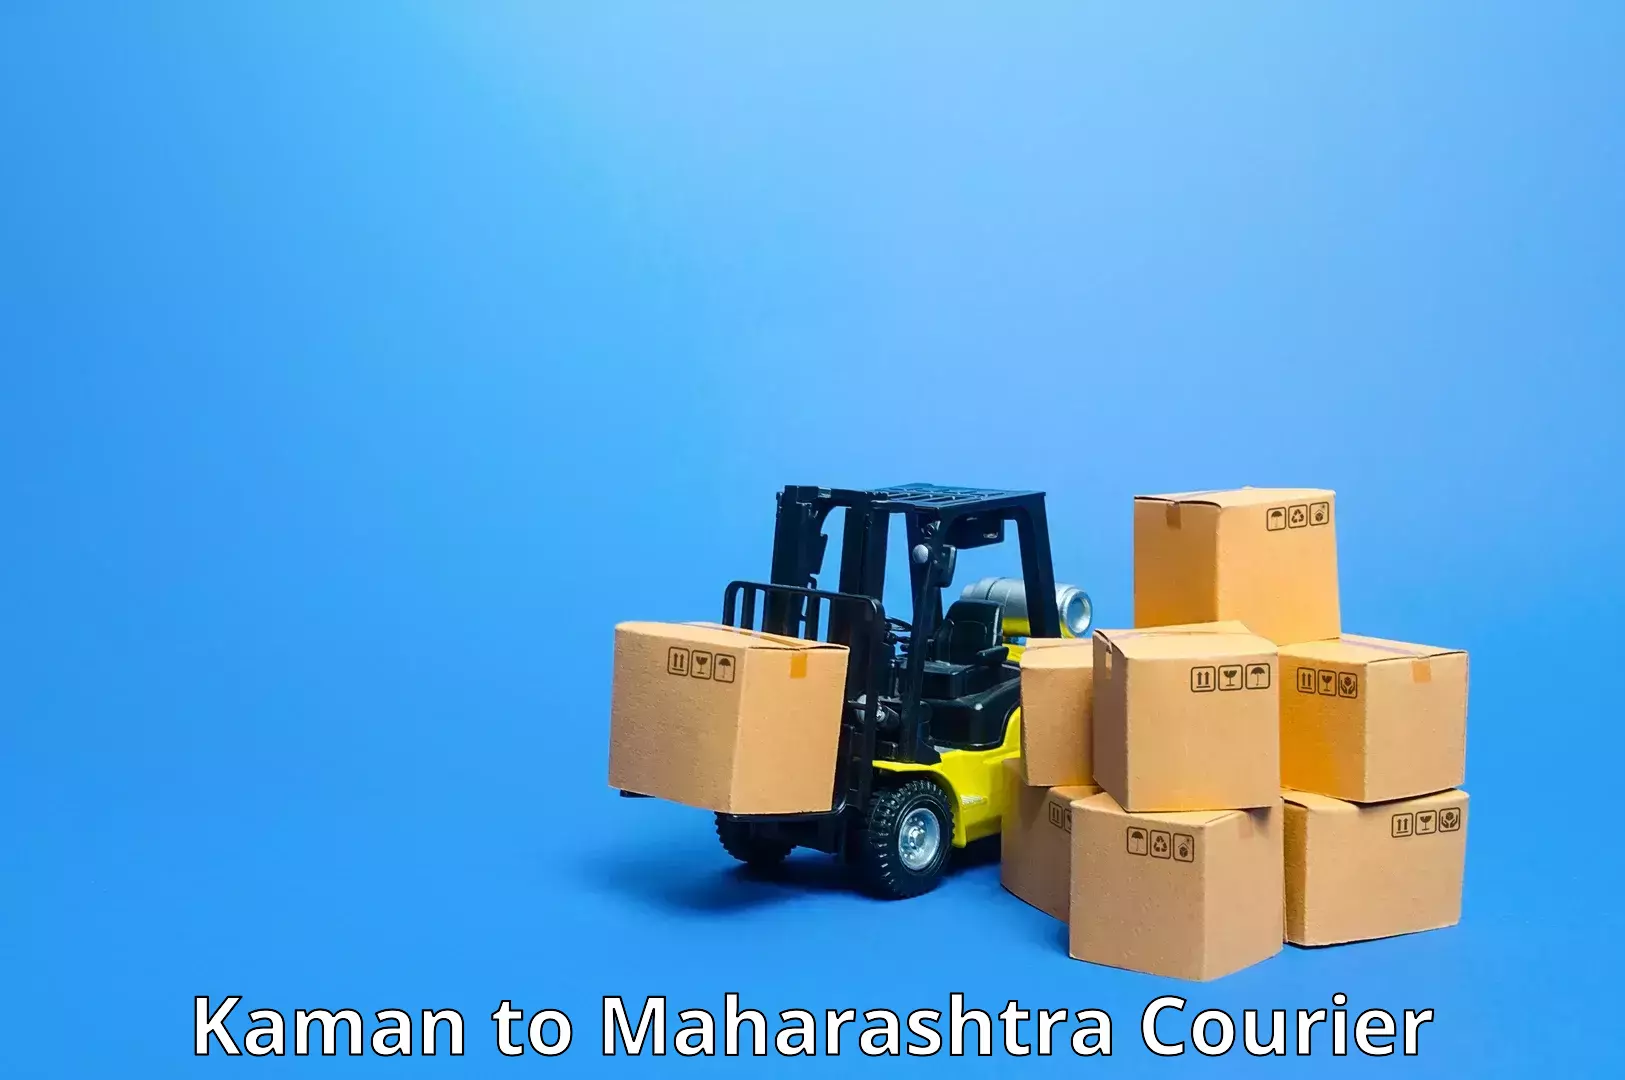 Versatile courier options in Kaman to IIIT Pune